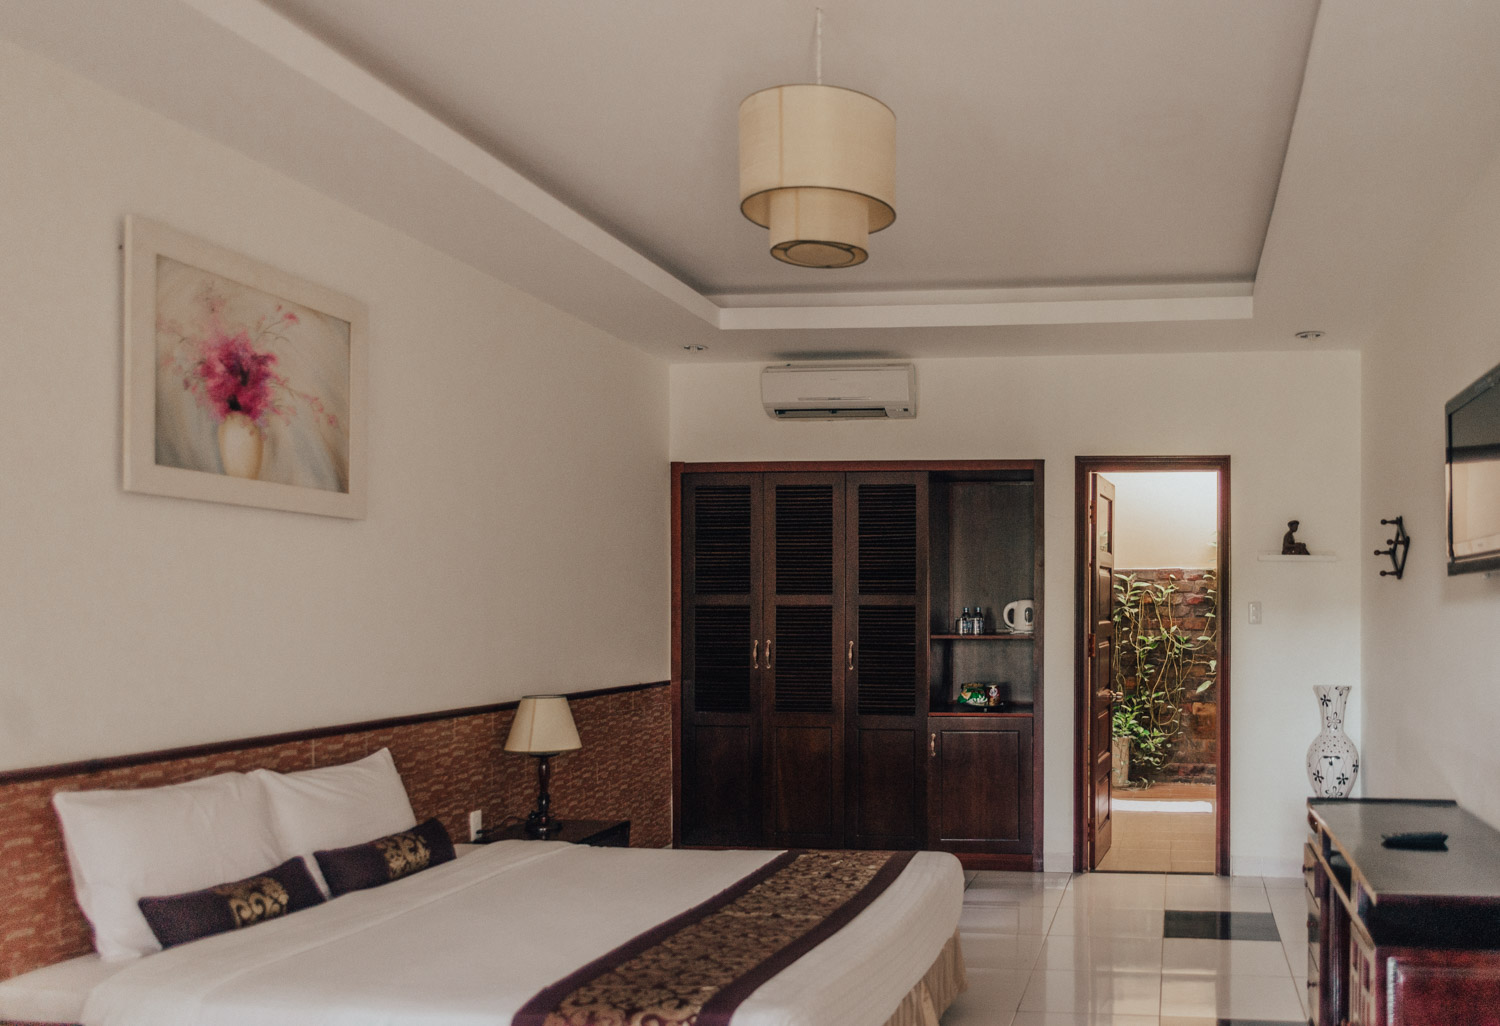 My Hotel Room at Vietstar Resort & Spa, Phu Yen